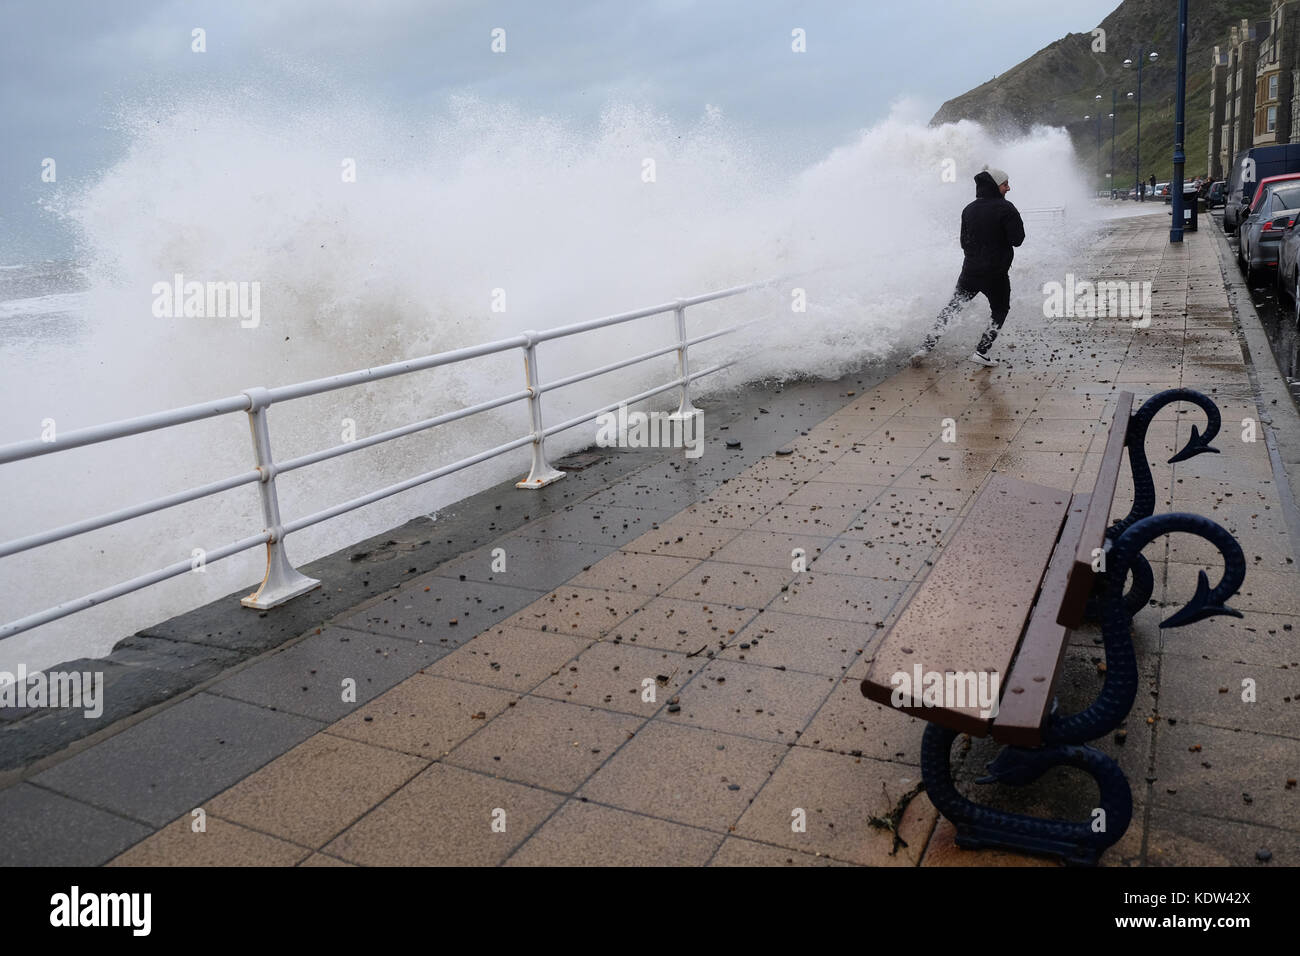 Aberystwyth, Ceredigion, Wales, UK-Flut kommt mit Sturm Ophelia offshore über die Irische See - ein Mann erhält durchnäßt, als der Sturm das Meer Wimpern - Peebles und Kies fliegen auf der Promenade-stong Winde in Aberystwyth auf der West Wales Küste als Sturm Ophelia Ansätze aus der Irischen See mit lokalen Winden von mehr als 50 km/h. Foto Steven Mai/Alamy leben Nachrichten Stockfoto